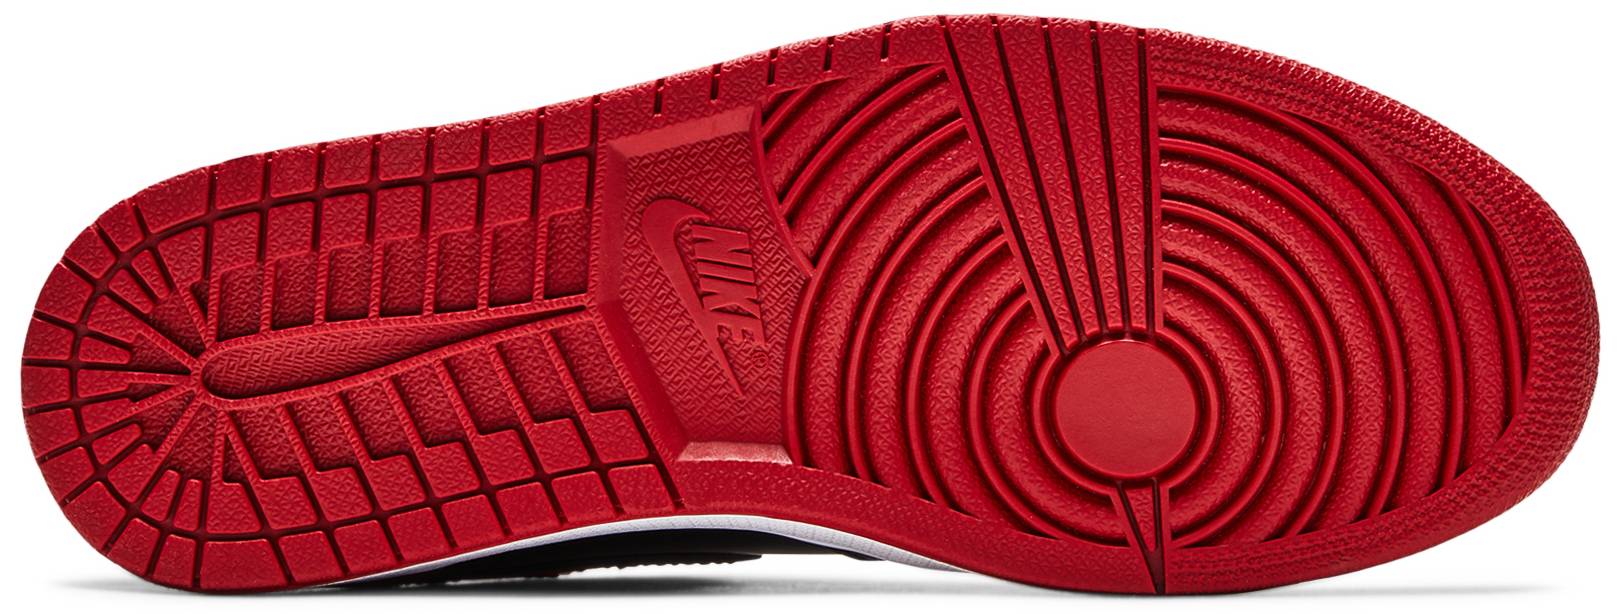 Nike Air Jordan 1 Retro High OG Patent Bred Men's